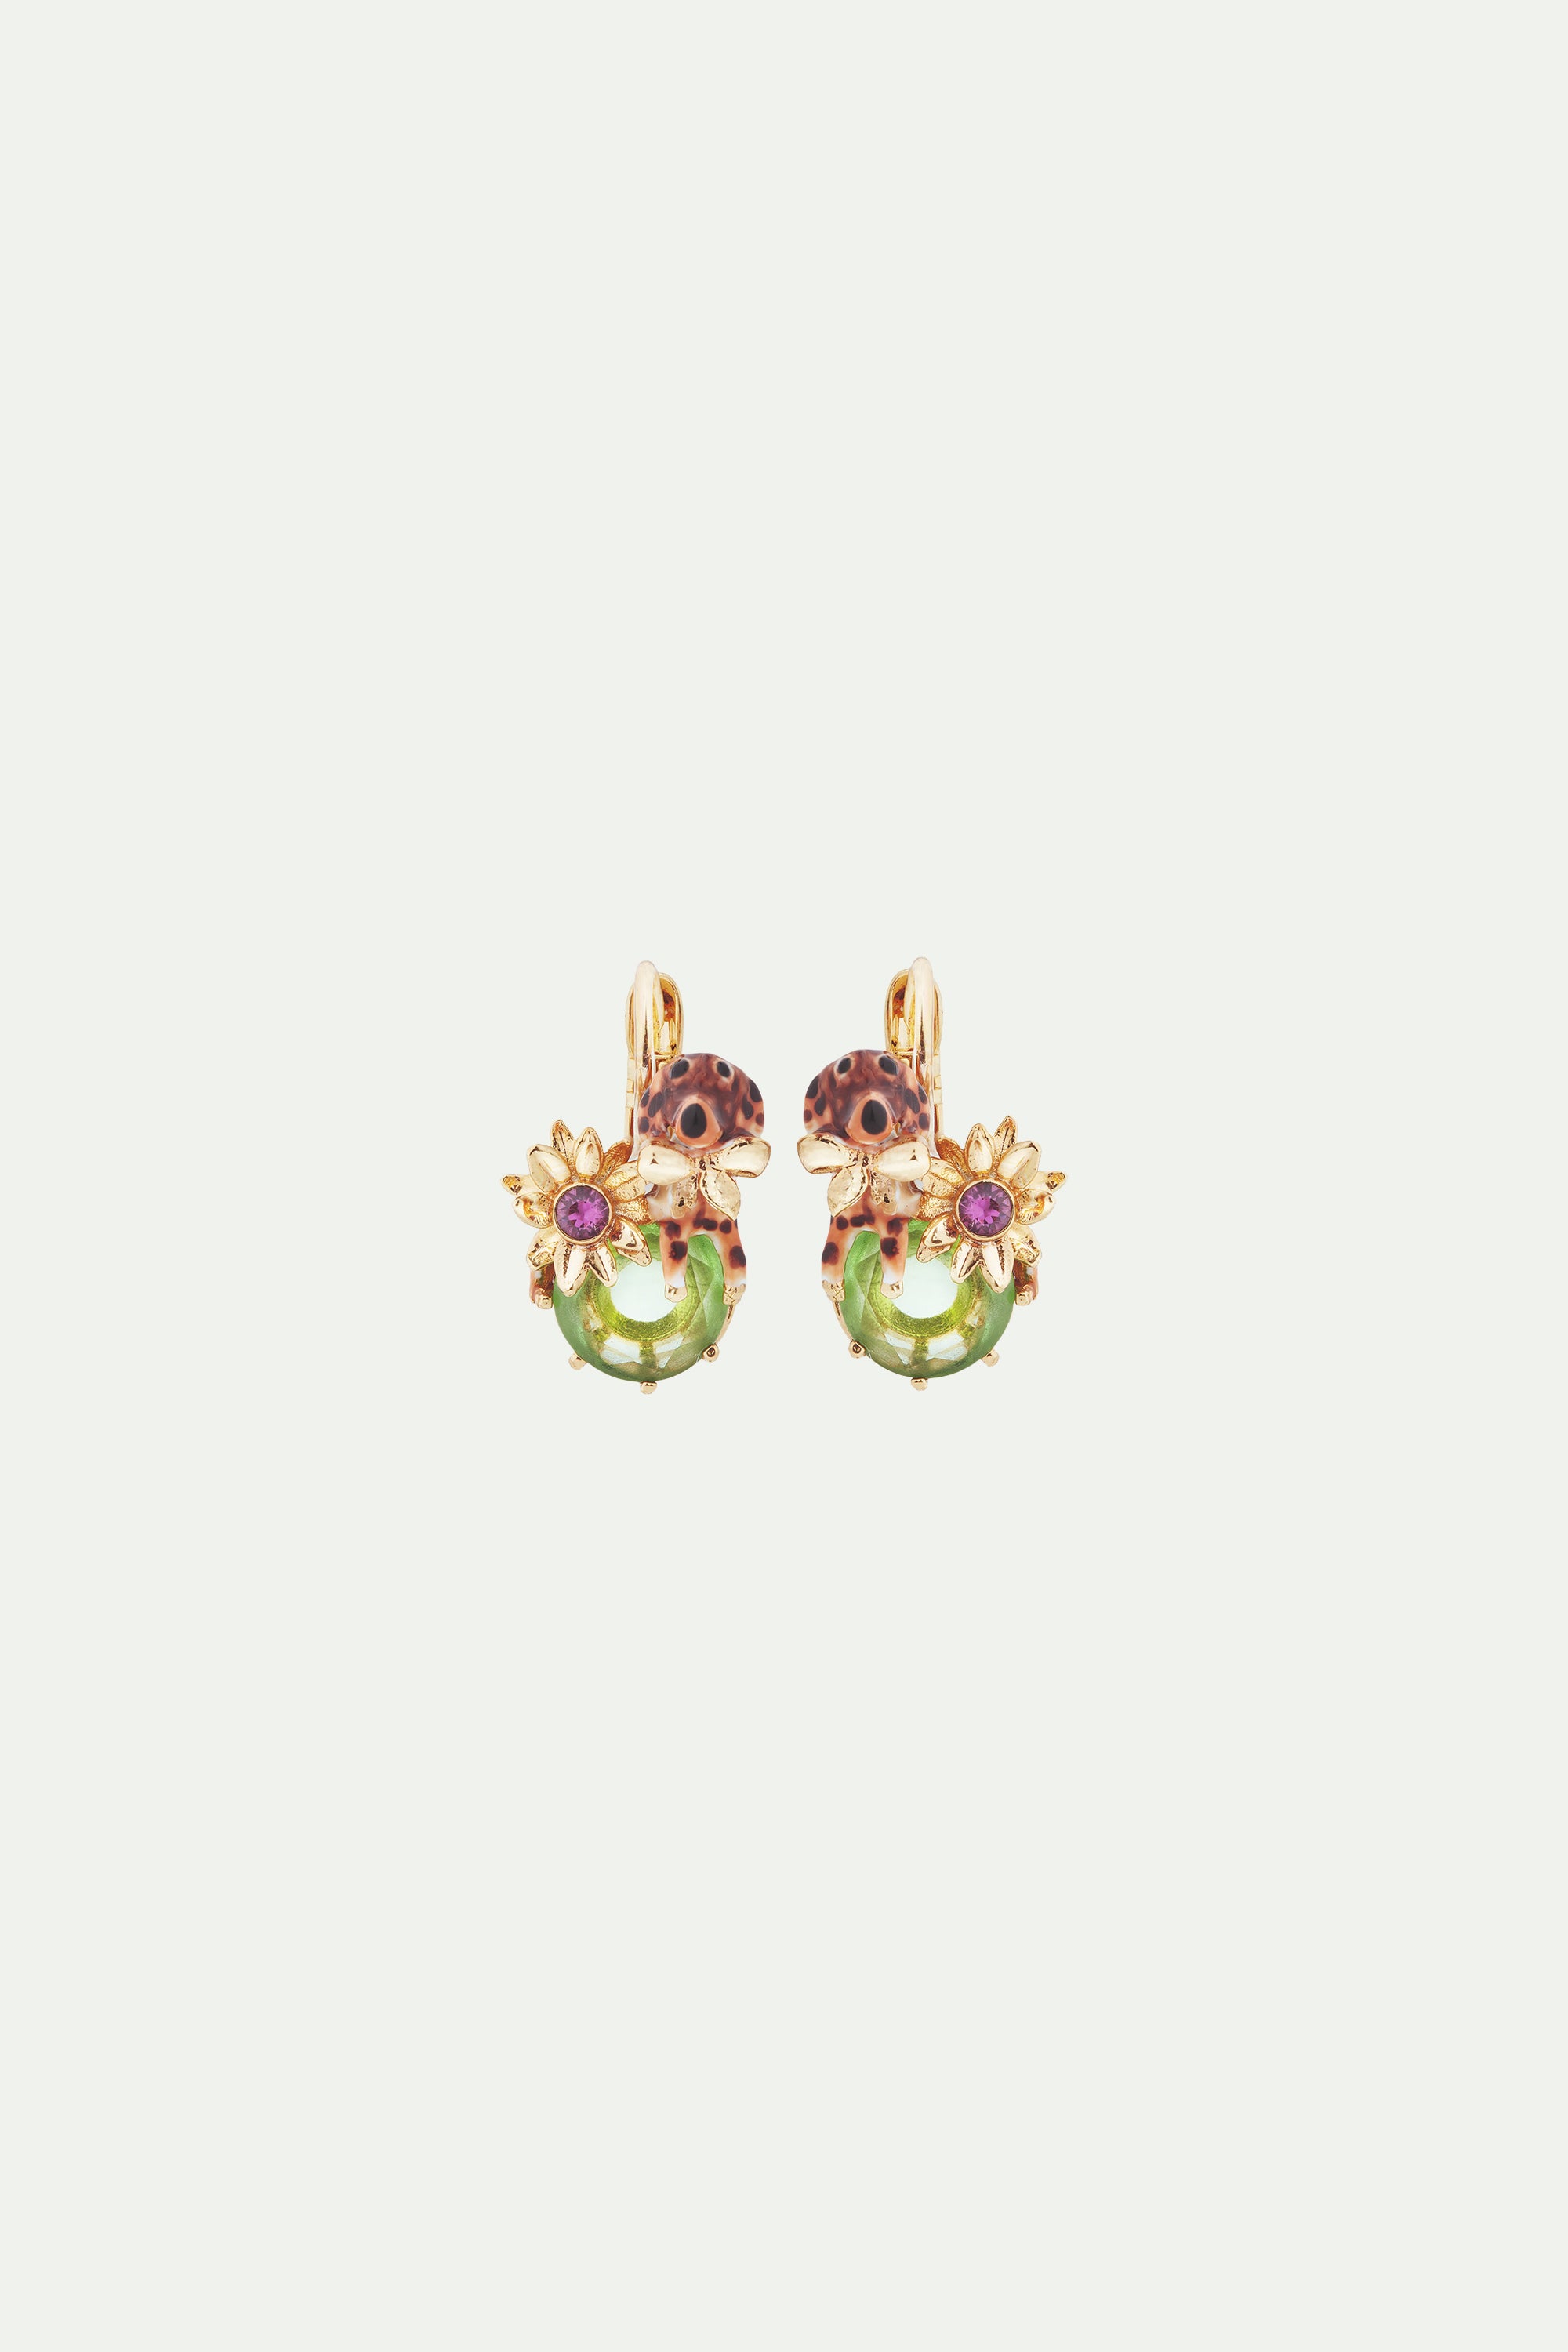 Dachshund and stone sleeper earrings